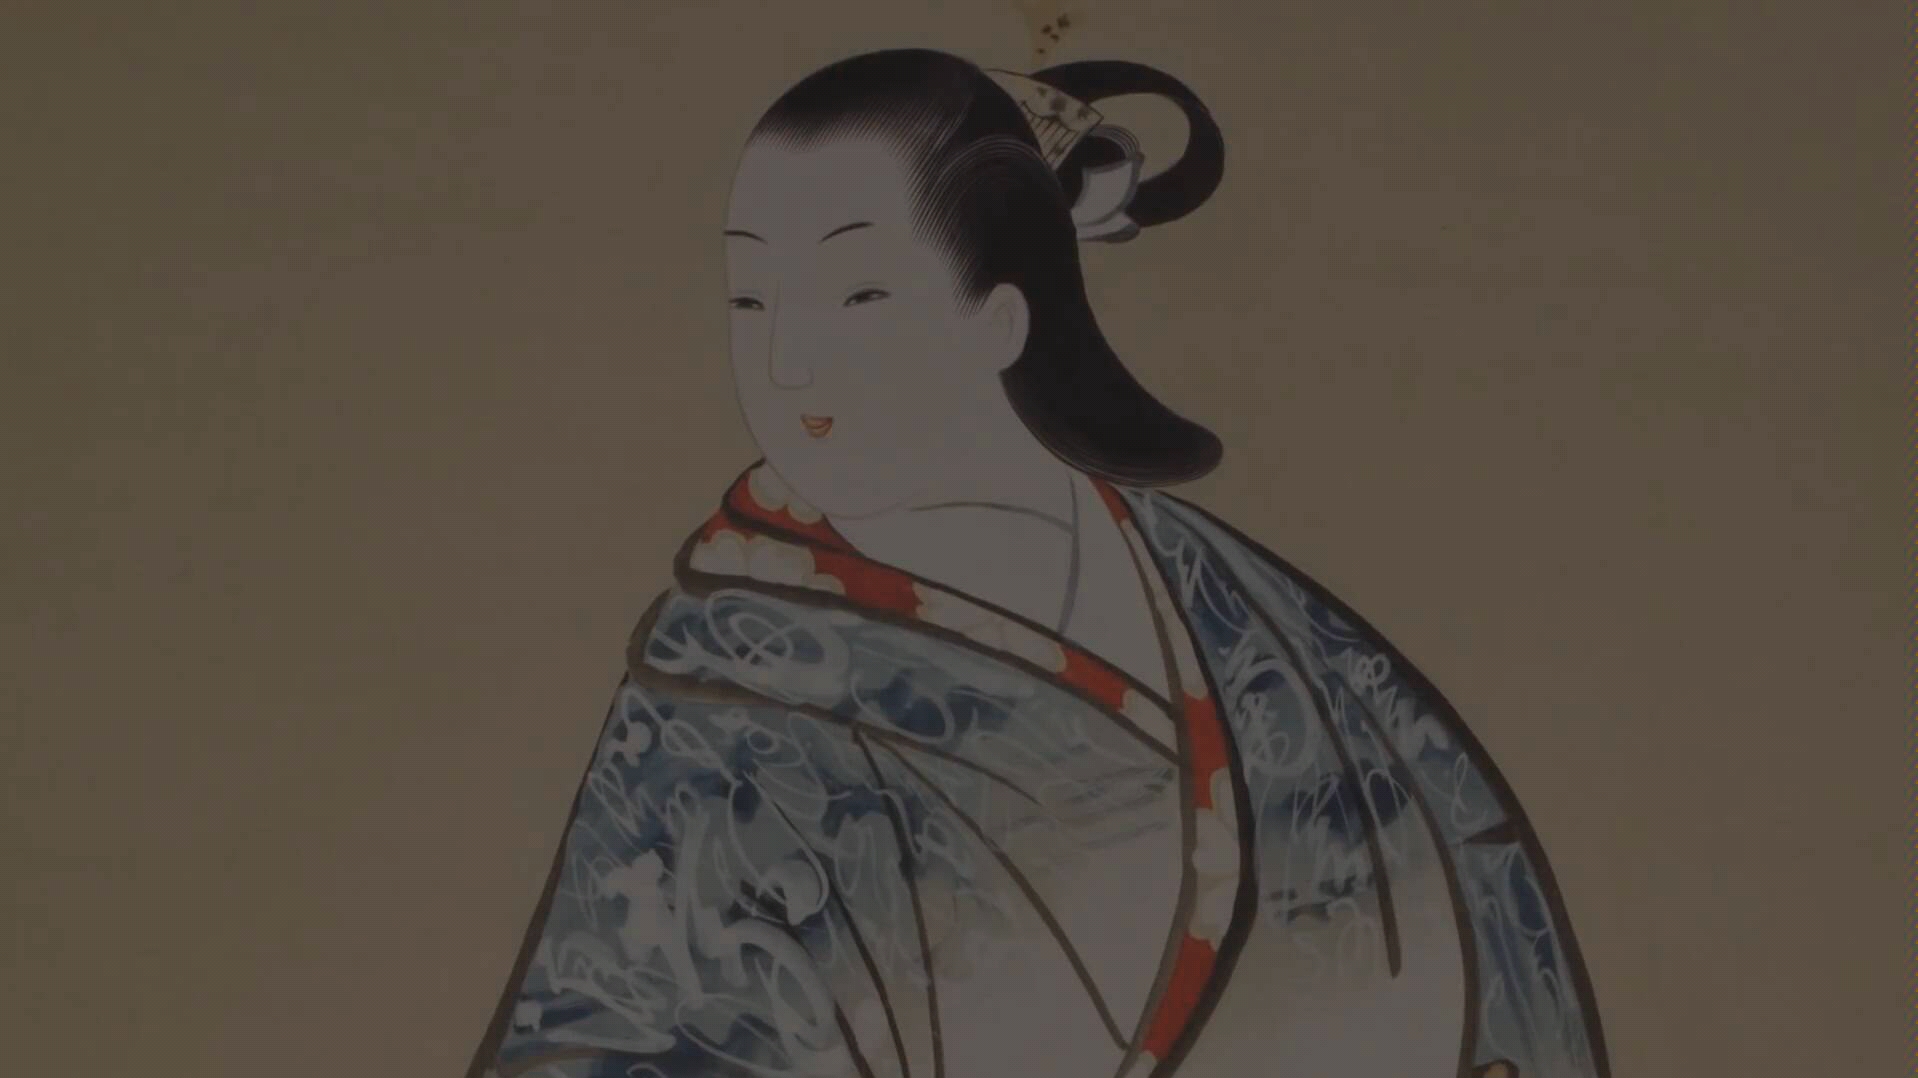 【搬运·日本髮】江户时代几种发型的复原